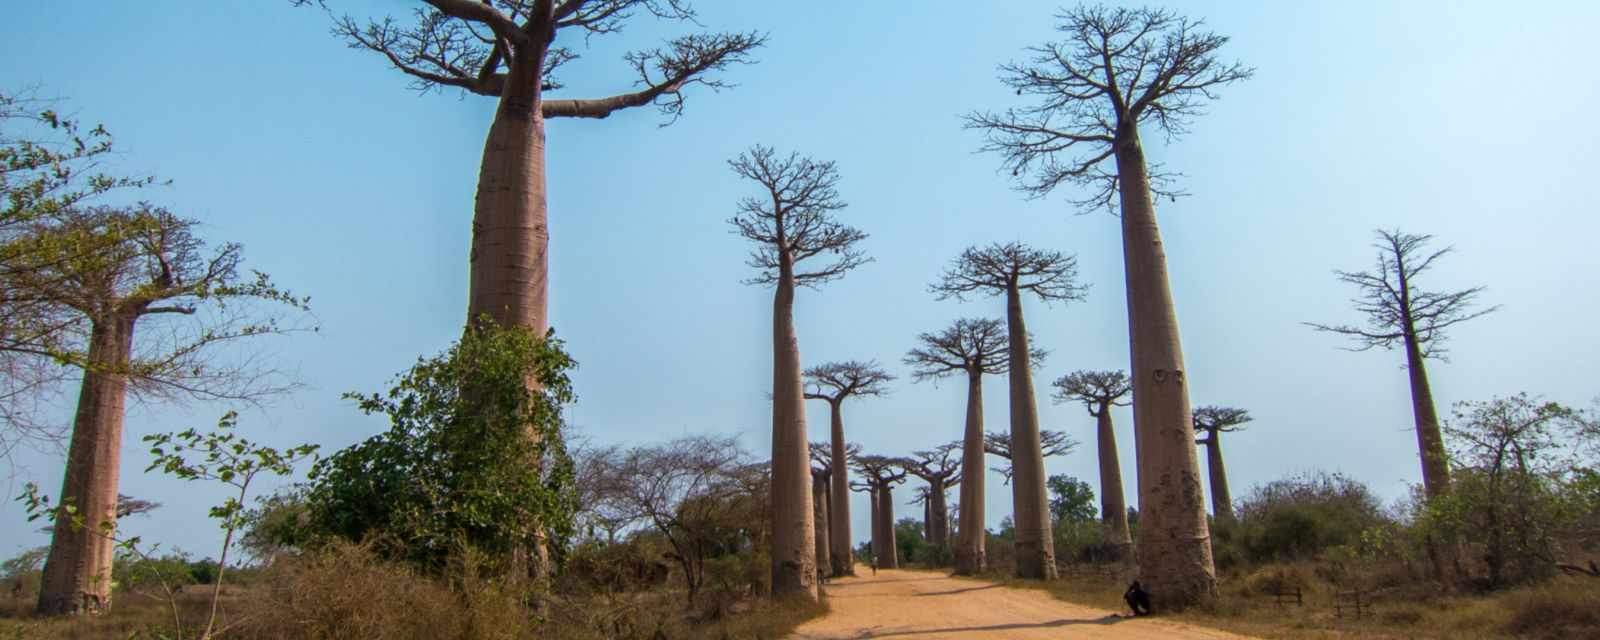 Baobabs Along the Avenue de Baobab in Madagascar